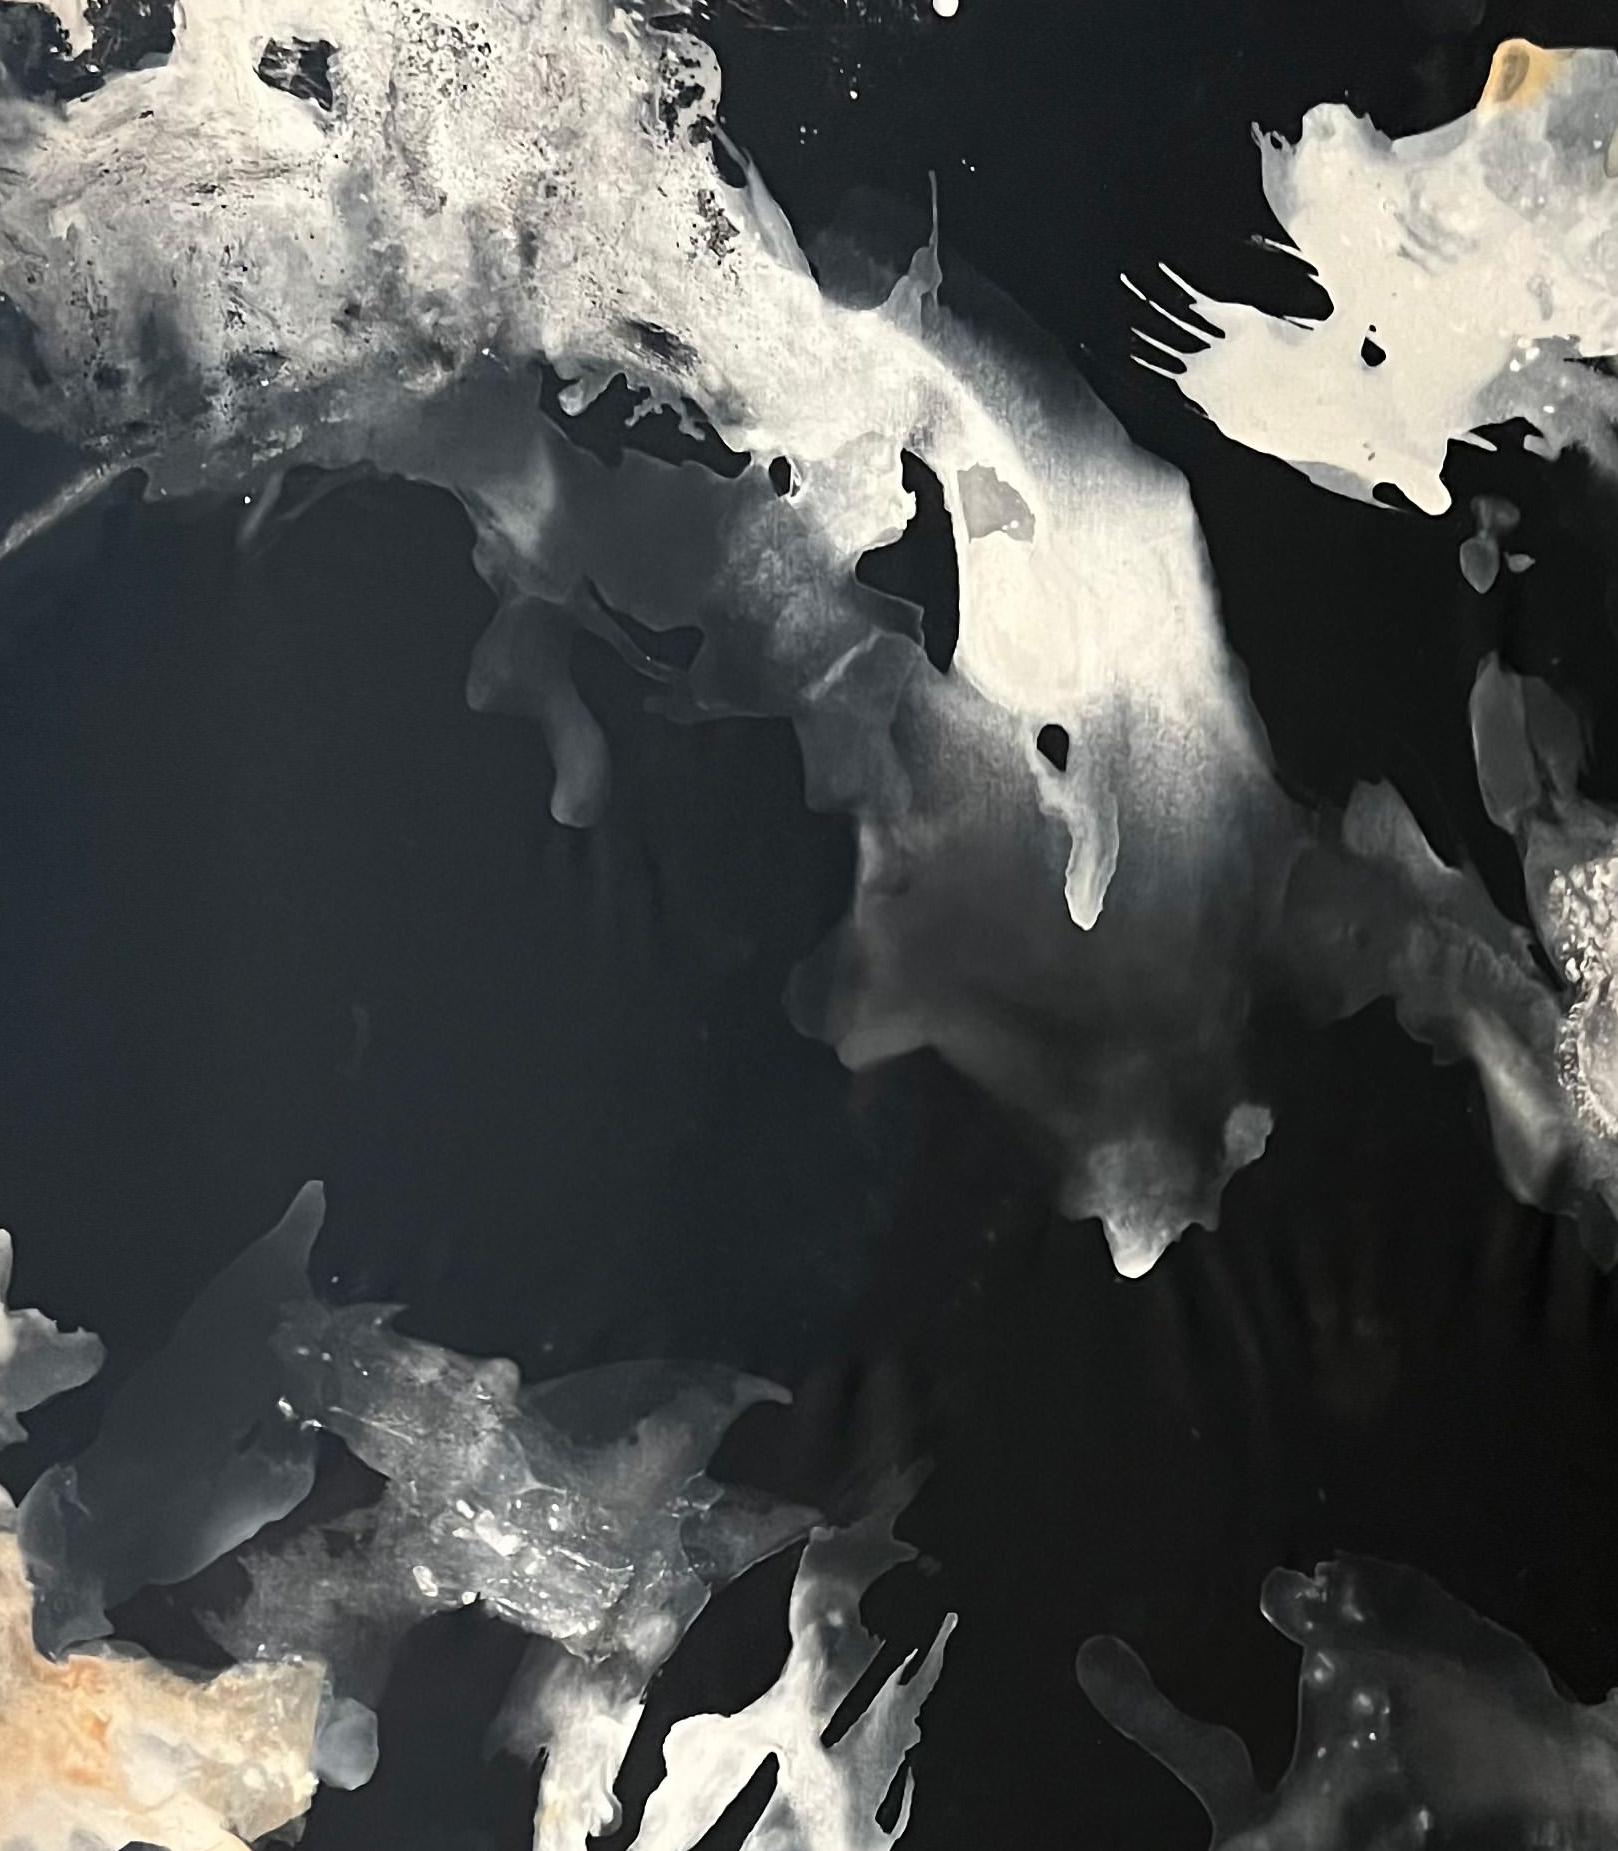 Weiße Serie n2, 2023 von Rosario Briones
Aus der Serie White 
Gemischte Medien: Naturpigmente, Tusche, Aquarellfarbe auf Leinwand.
Abmessungen: 160 H x 100 B cm.
Ungerahmt
Signiert von der Künstlerin

In dieser Serie stellt der Künstler die Kraft